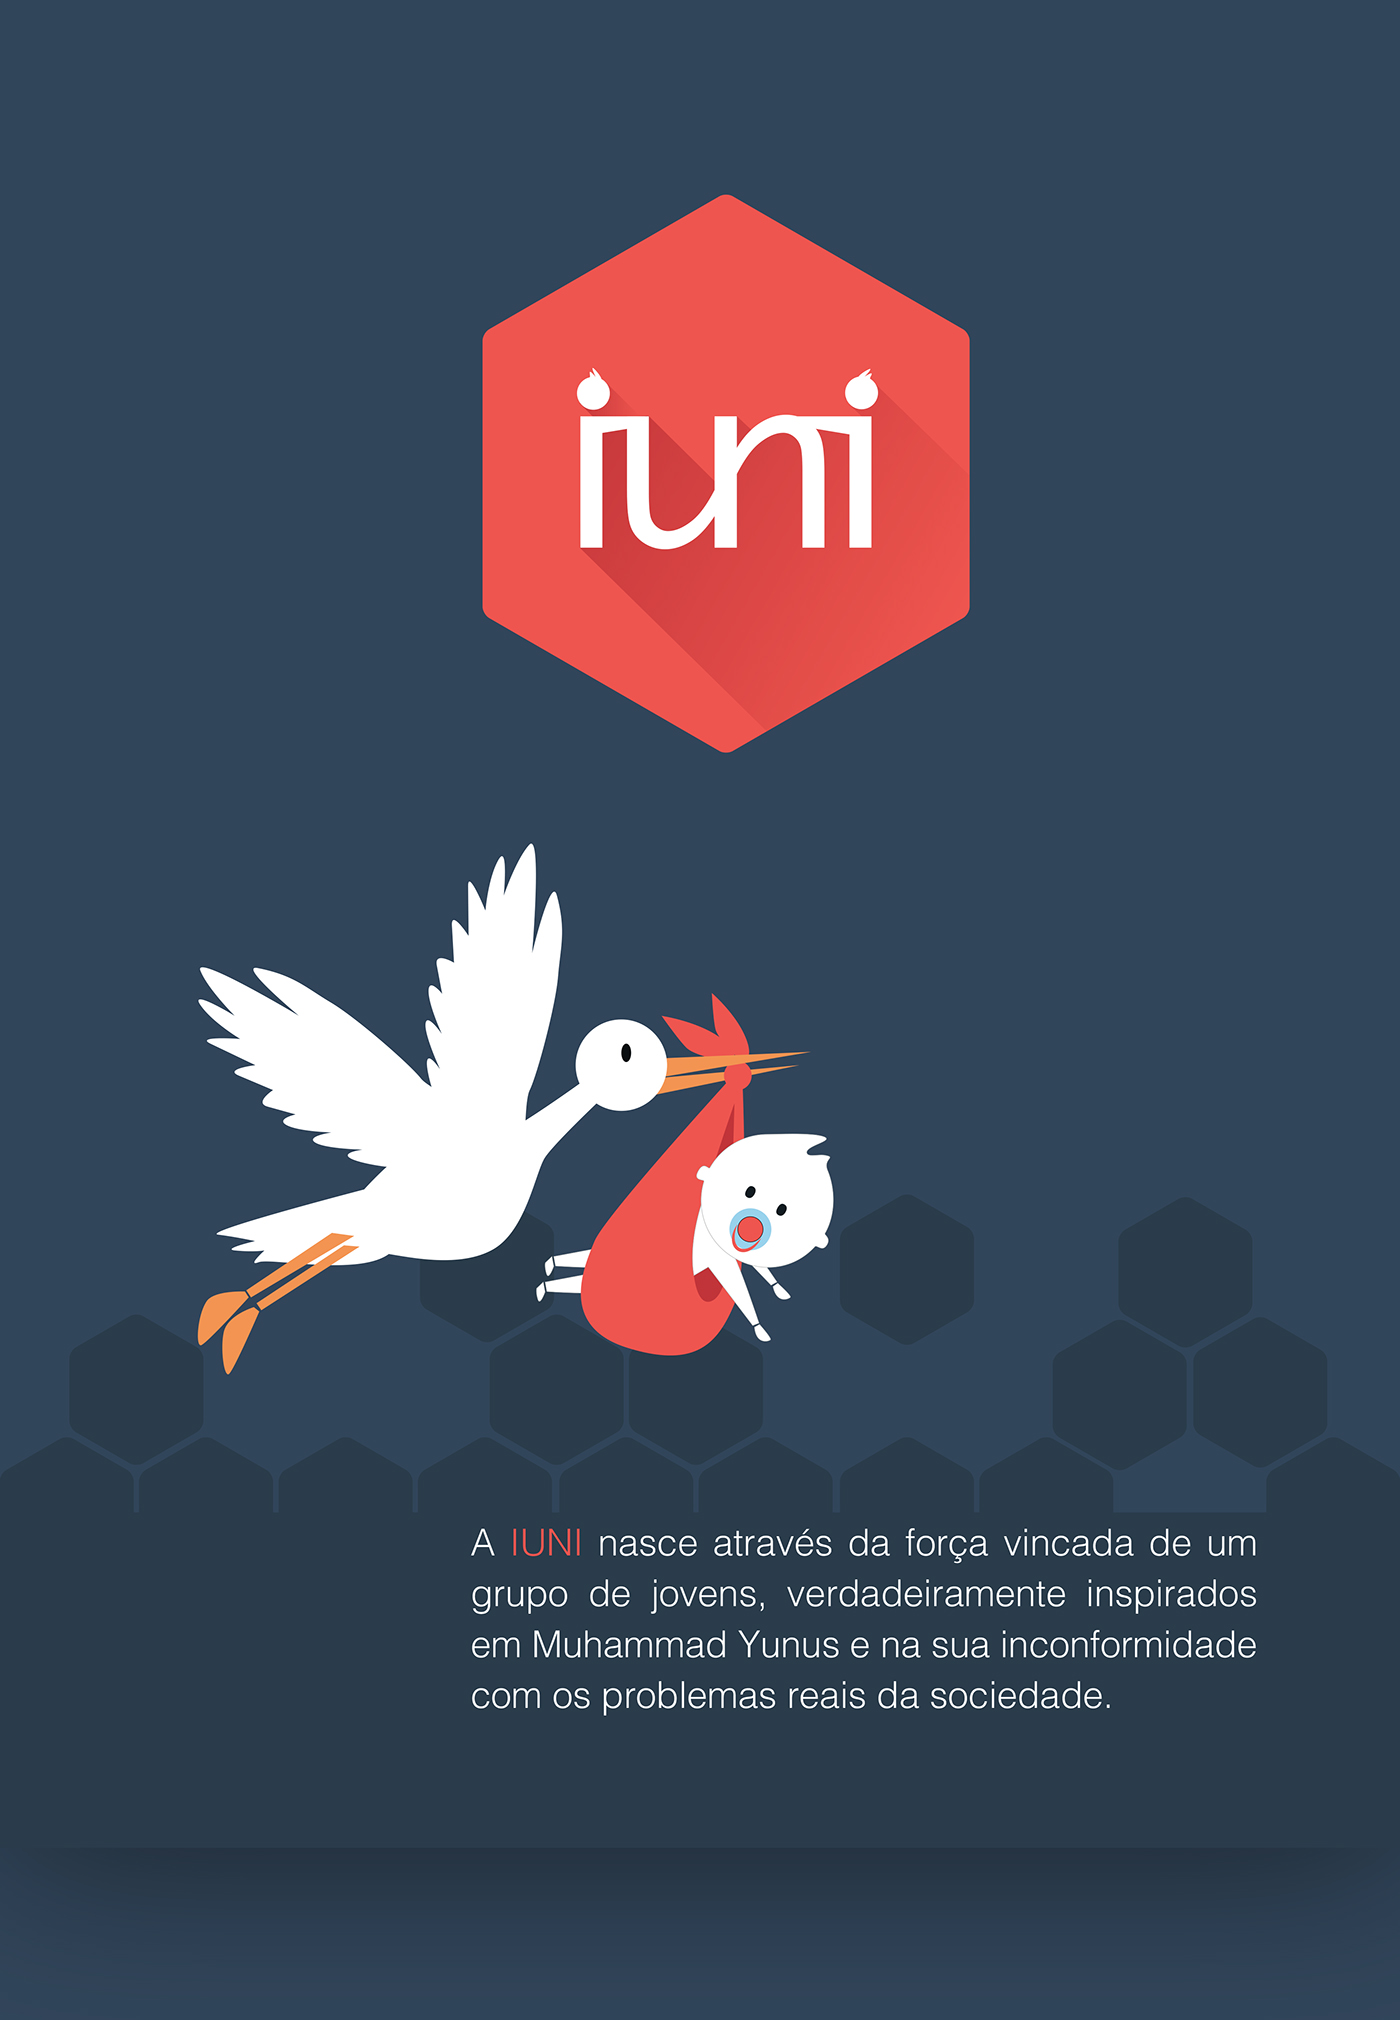 iuni social business mascote Web logo facebook page estacionário design ilustration cards